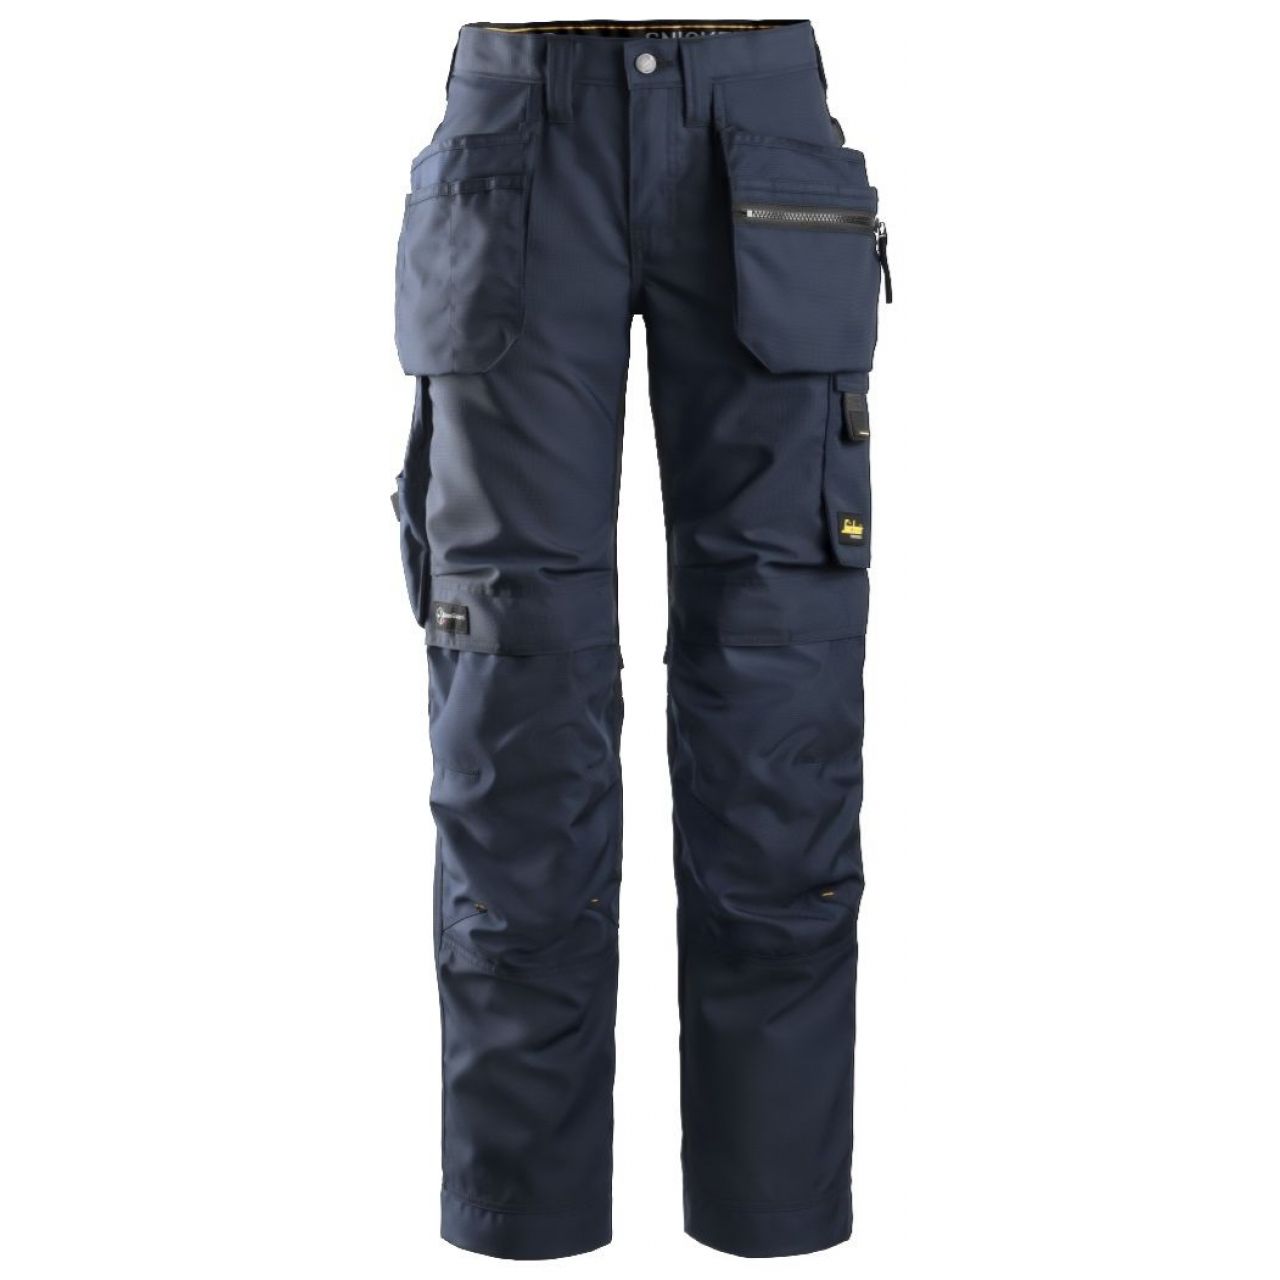 Pantalon de mujer AllroundWork+ con bolsillos flotantes azul marino-negro talla 018